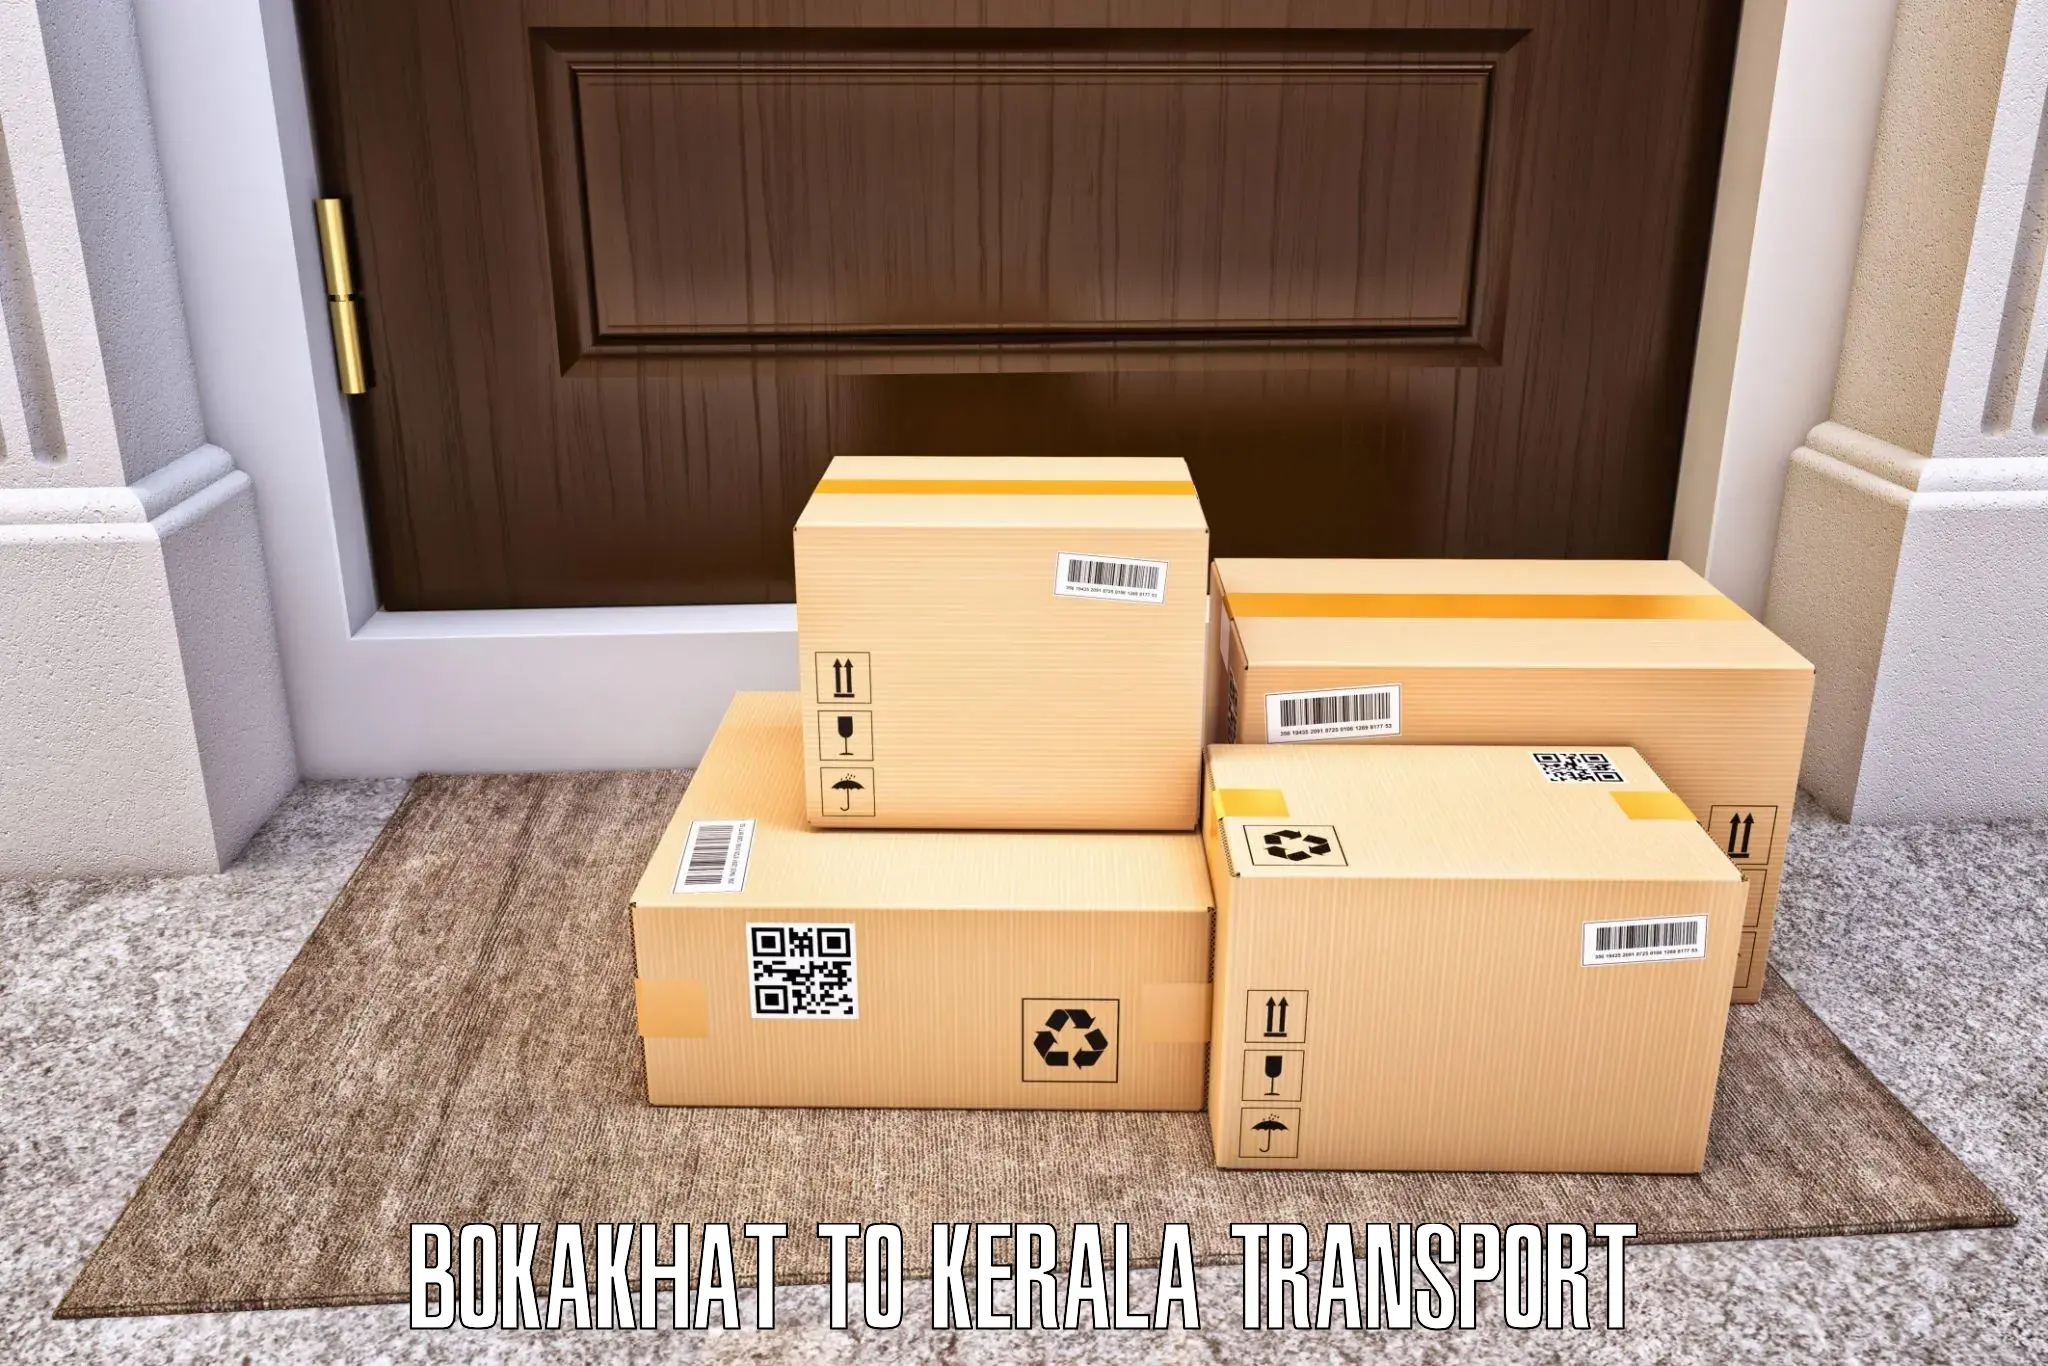 Cargo train transport services Bokakhat to Kondotty